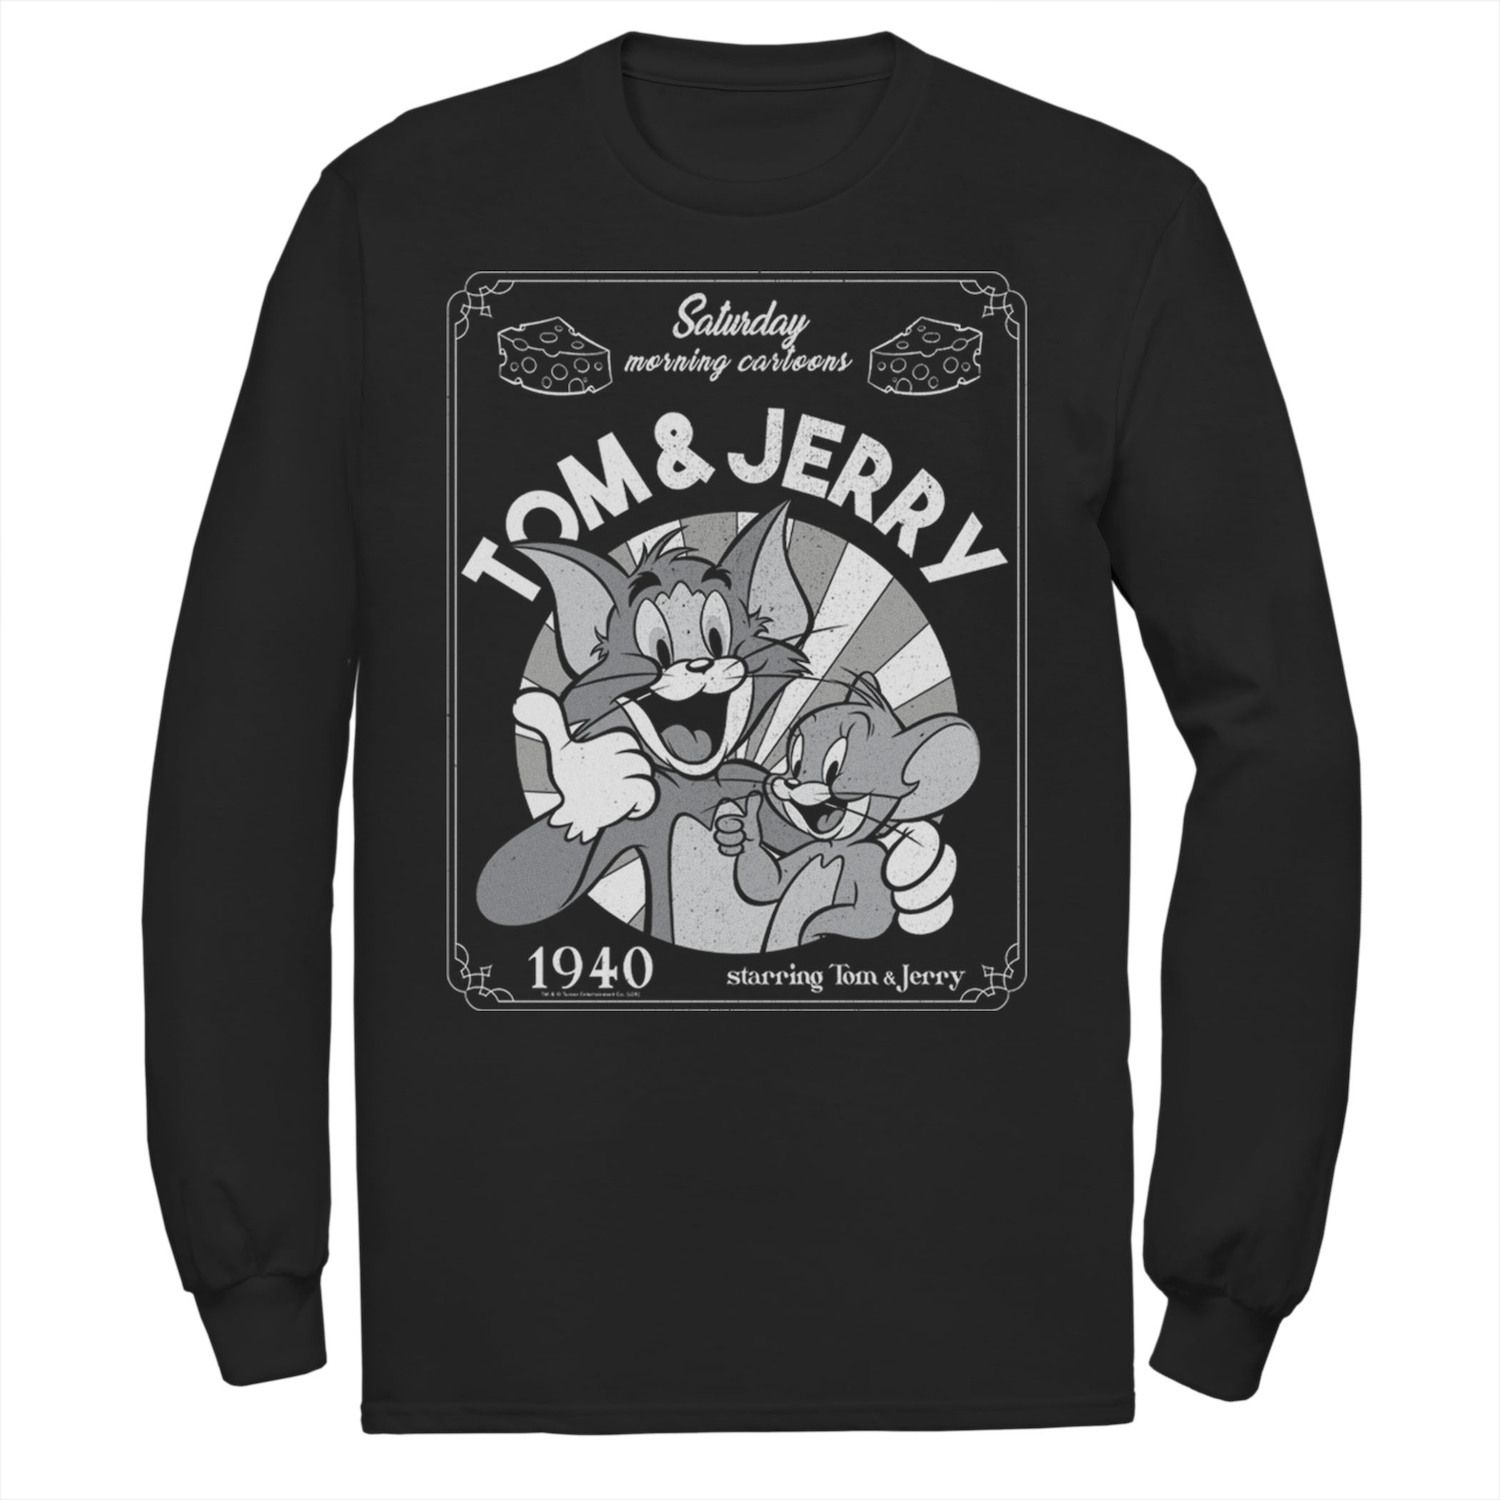 Мужская футболка с портретом Тома и Джерри в субботу утром с героями мультфильмов 1940 года Licensed Character гур батья убийство в субботу утром